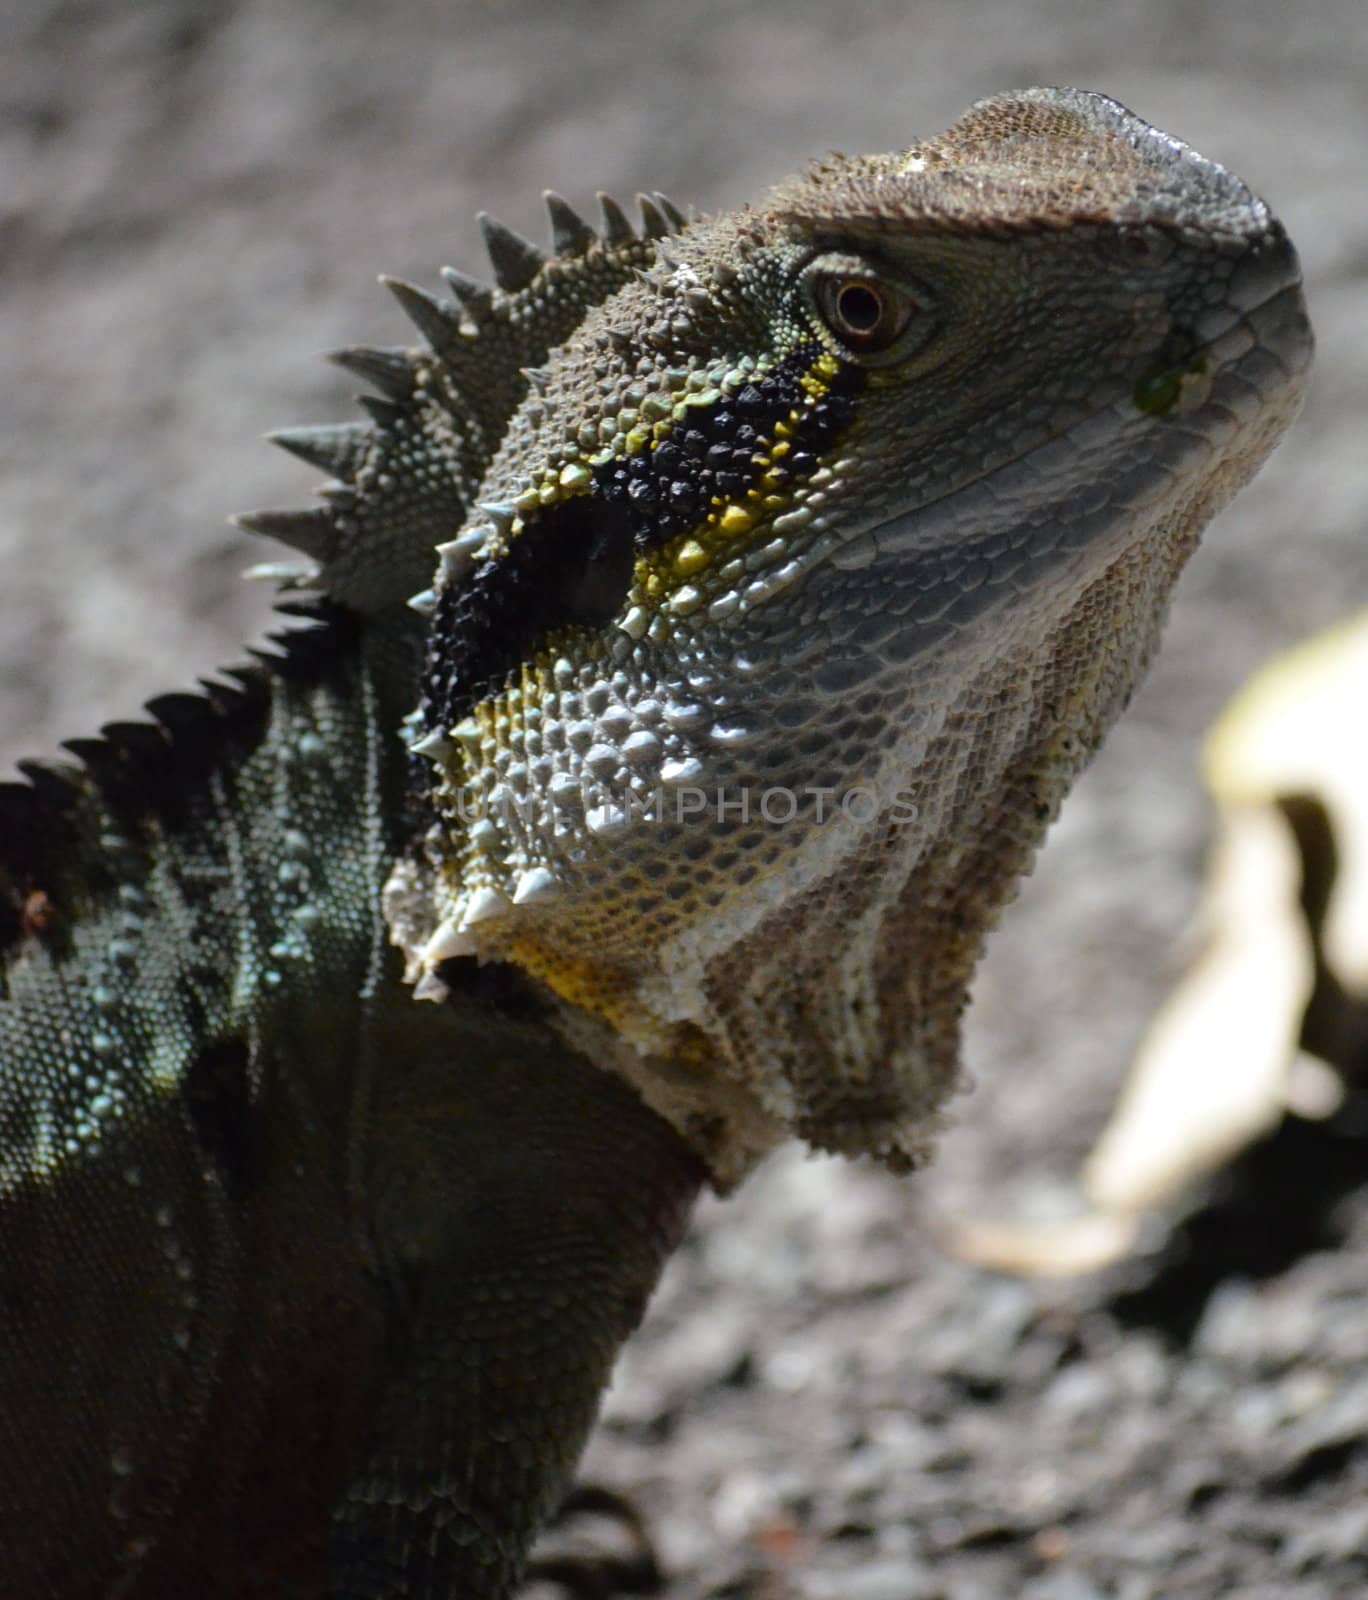 Australian Lizard by KirbyWalkerPhotos